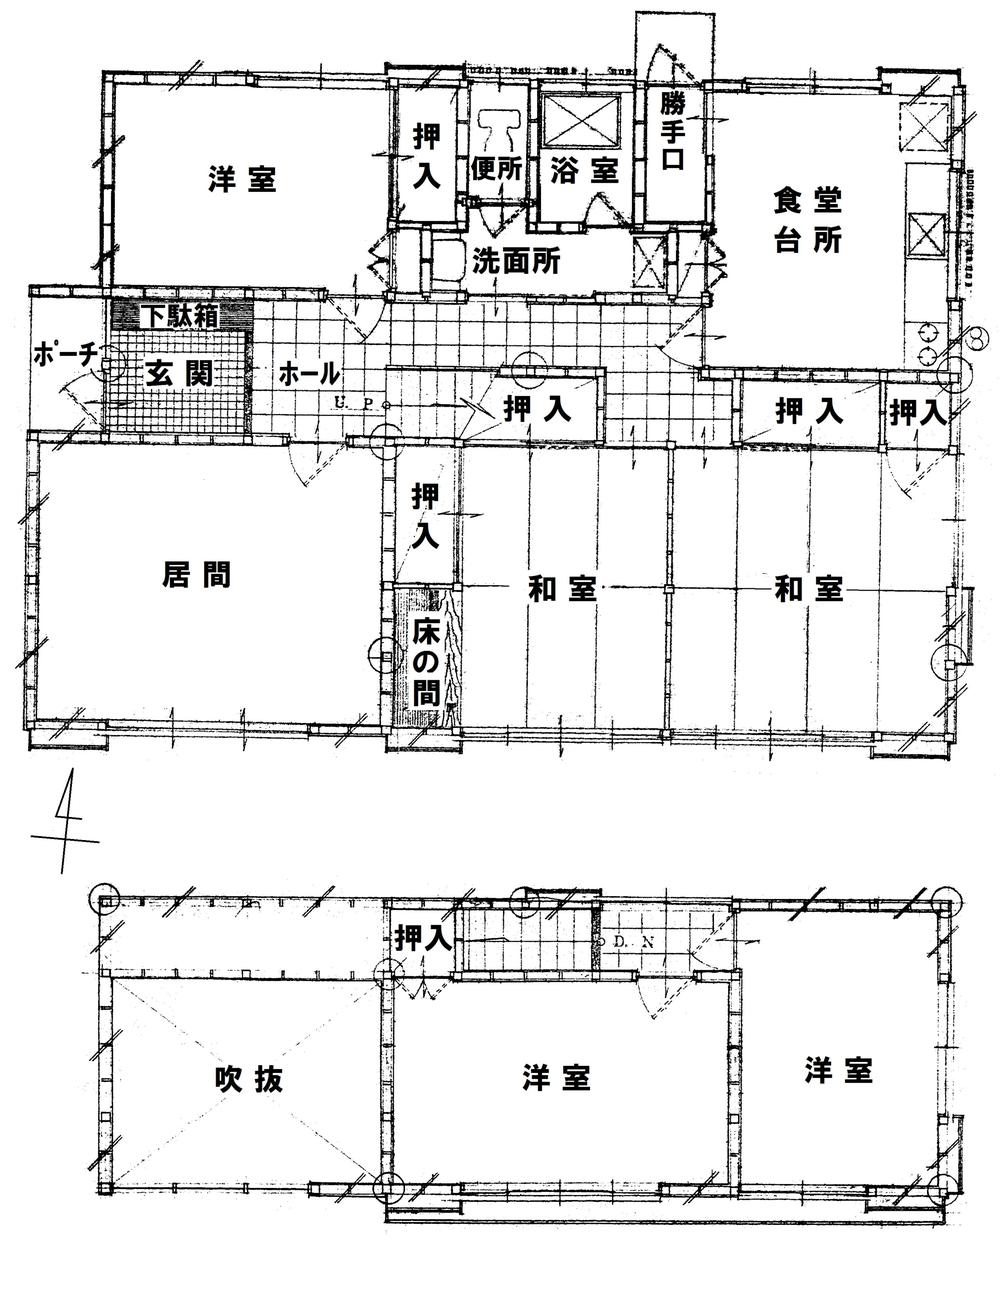 Floor plan. 25 million yen, 6DK, Land area 297 sq m , Building area 119.23 sq m